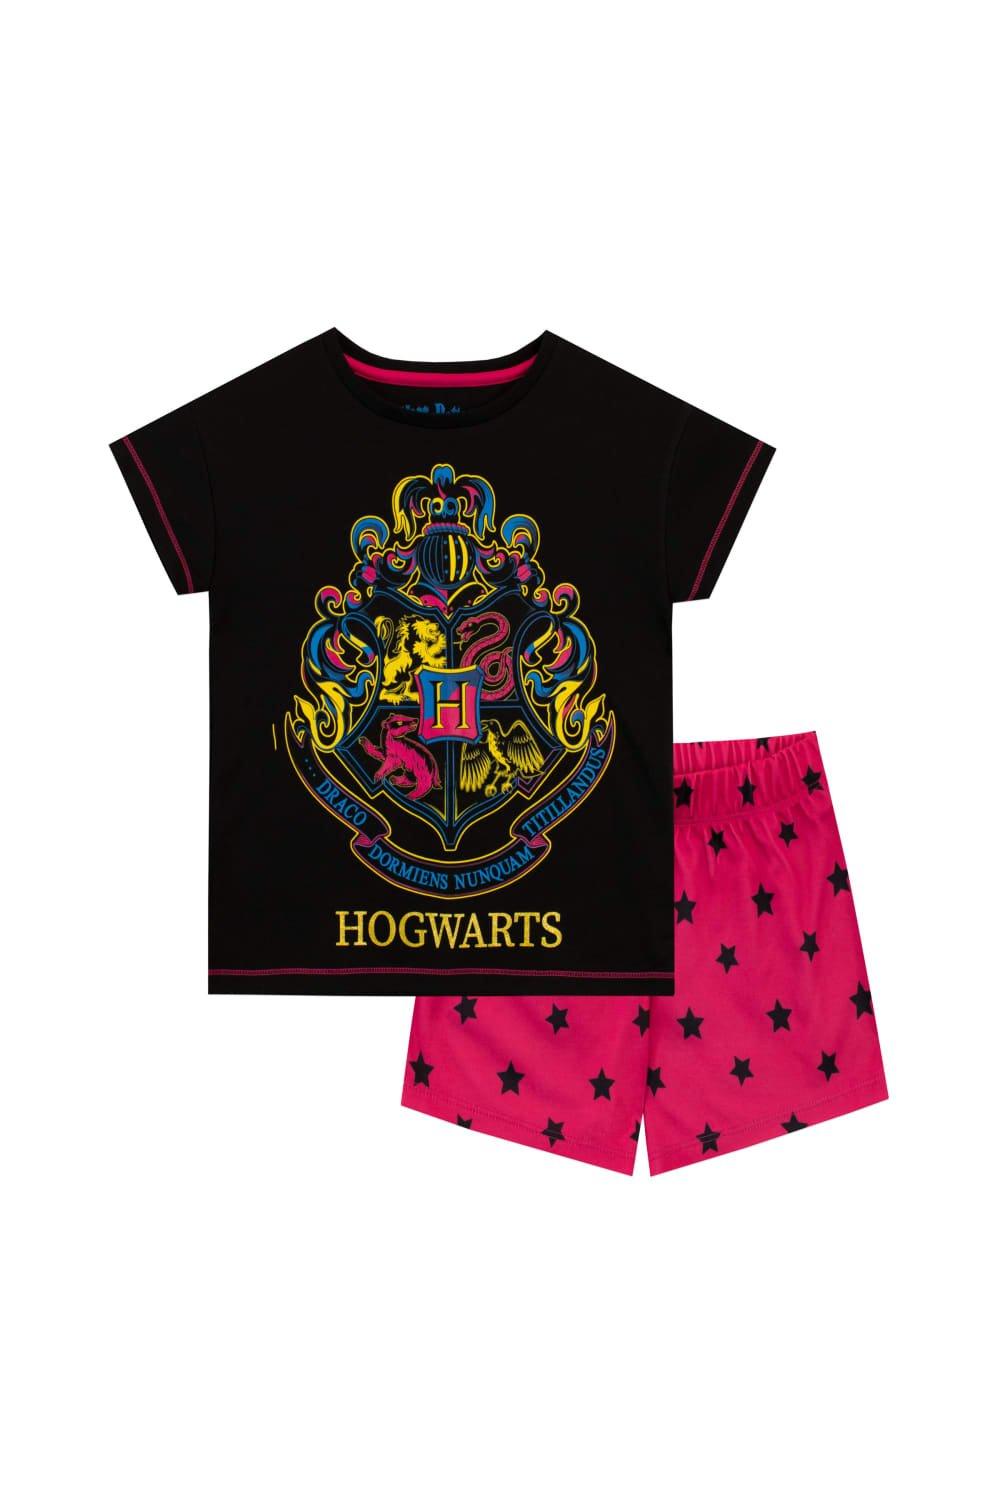 Hogwarts Short Pyjamas